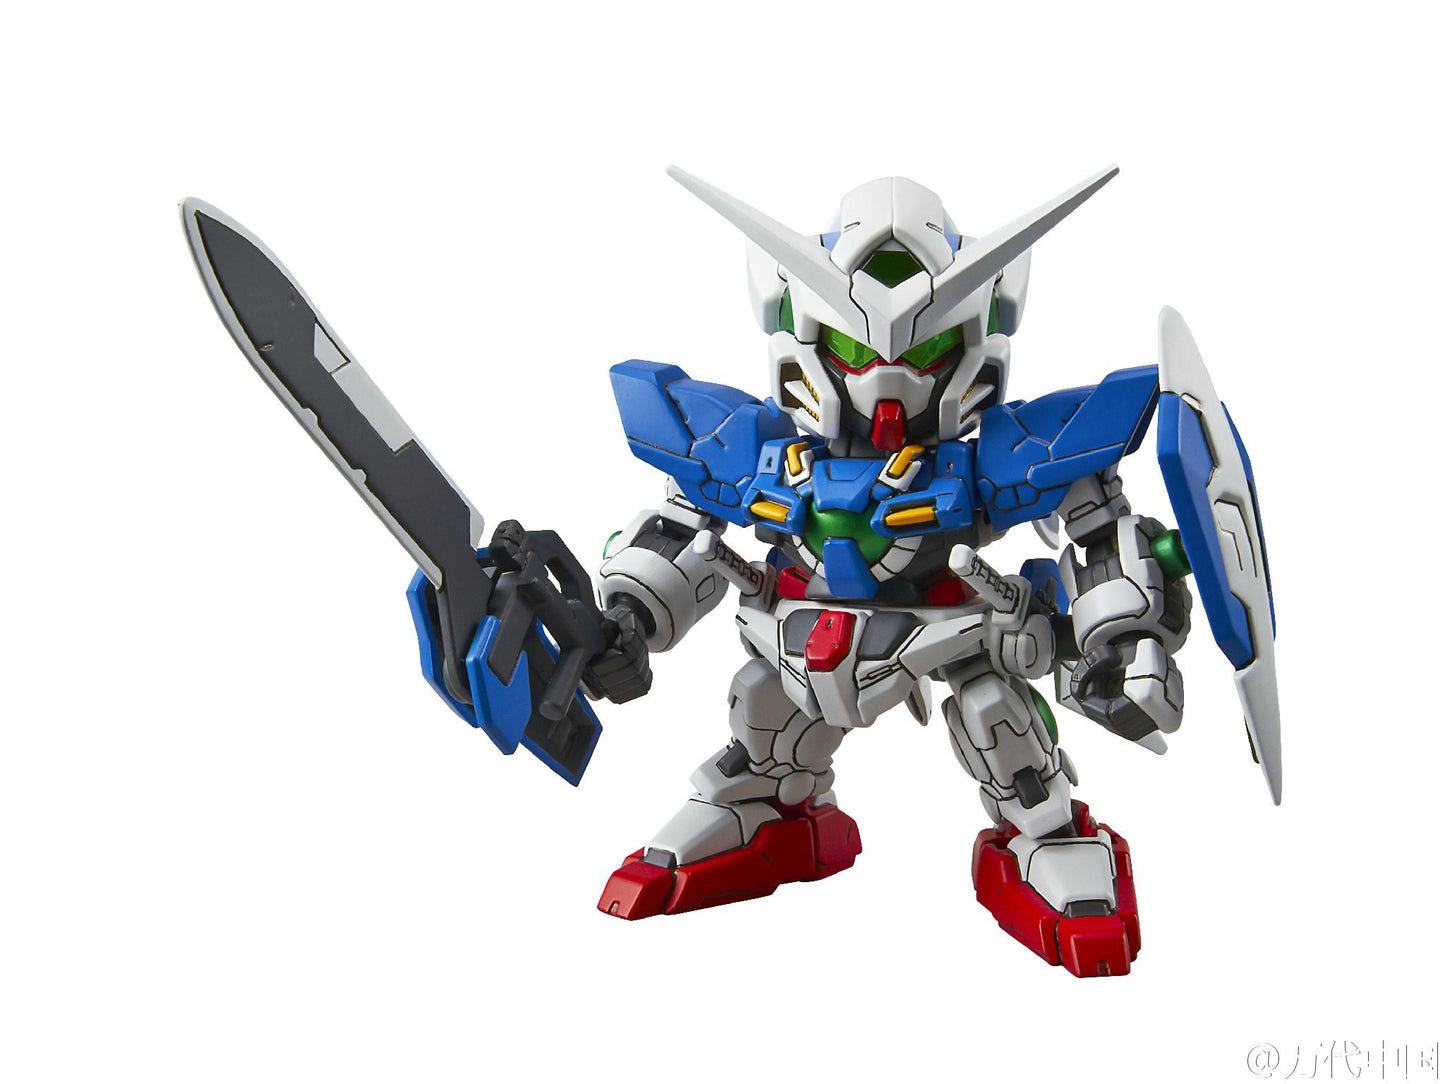 SD EX-Standard Gundam Exia